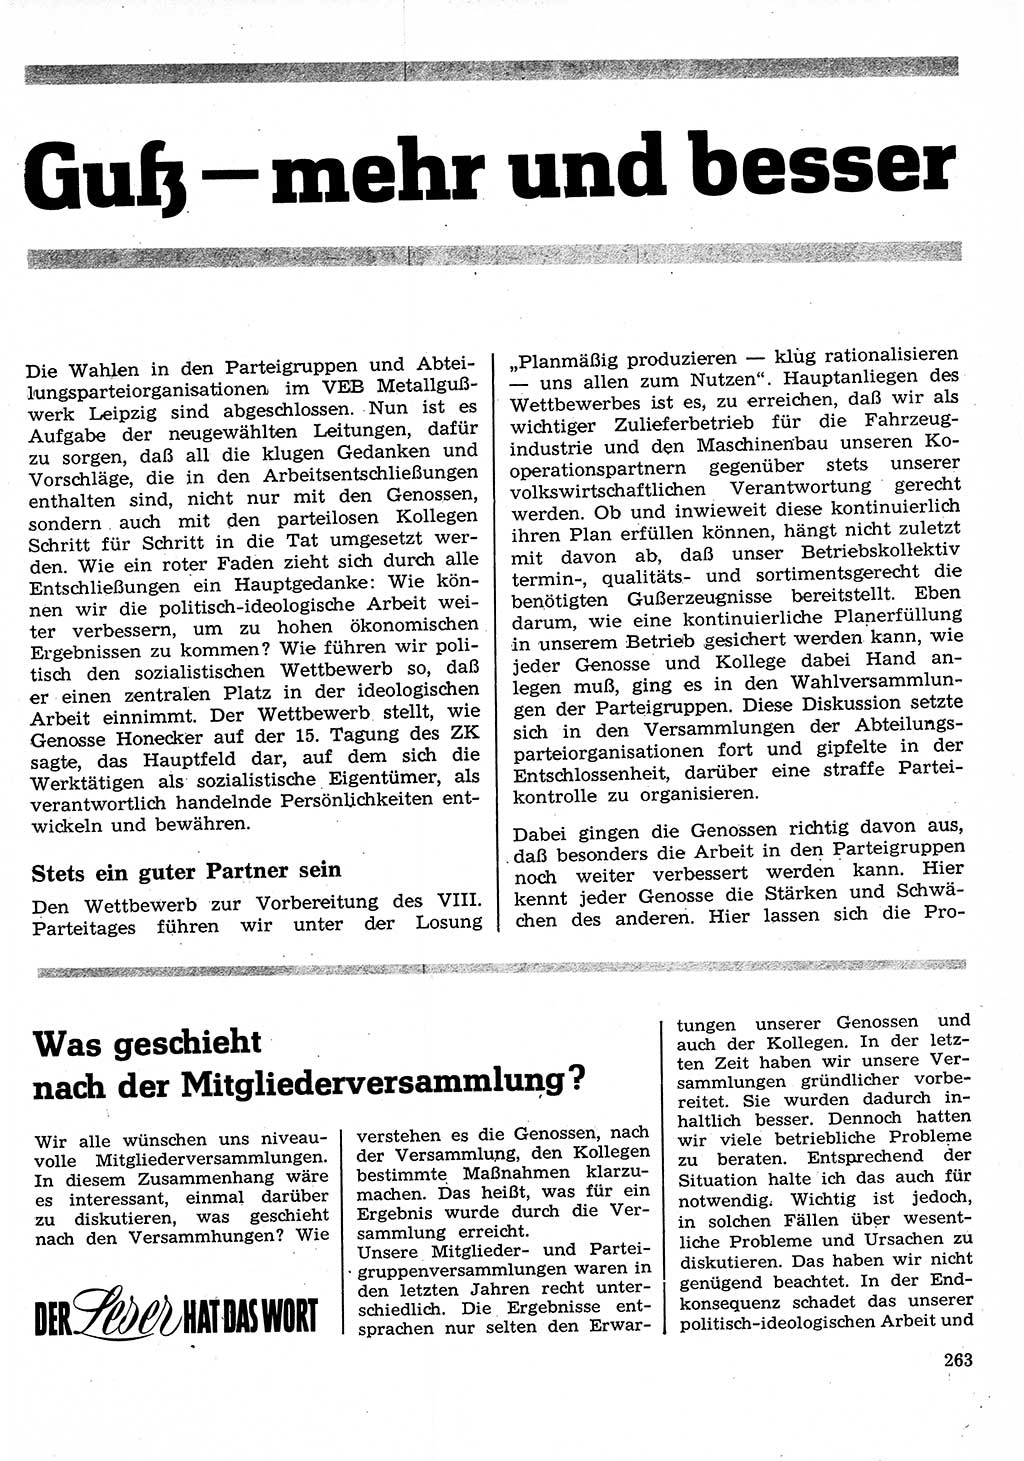 Neuer Weg (NW), Organ des Zentralkomitees (ZK) der SED (Sozialistische Einheitspartei Deutschlands) für Fragen des Parteilebens, 26. Jahrgang [Deutsche Demokratische Republik (DDR)] 1971, Seite 263 (NW ZK SED DDR 1971, S. 263)